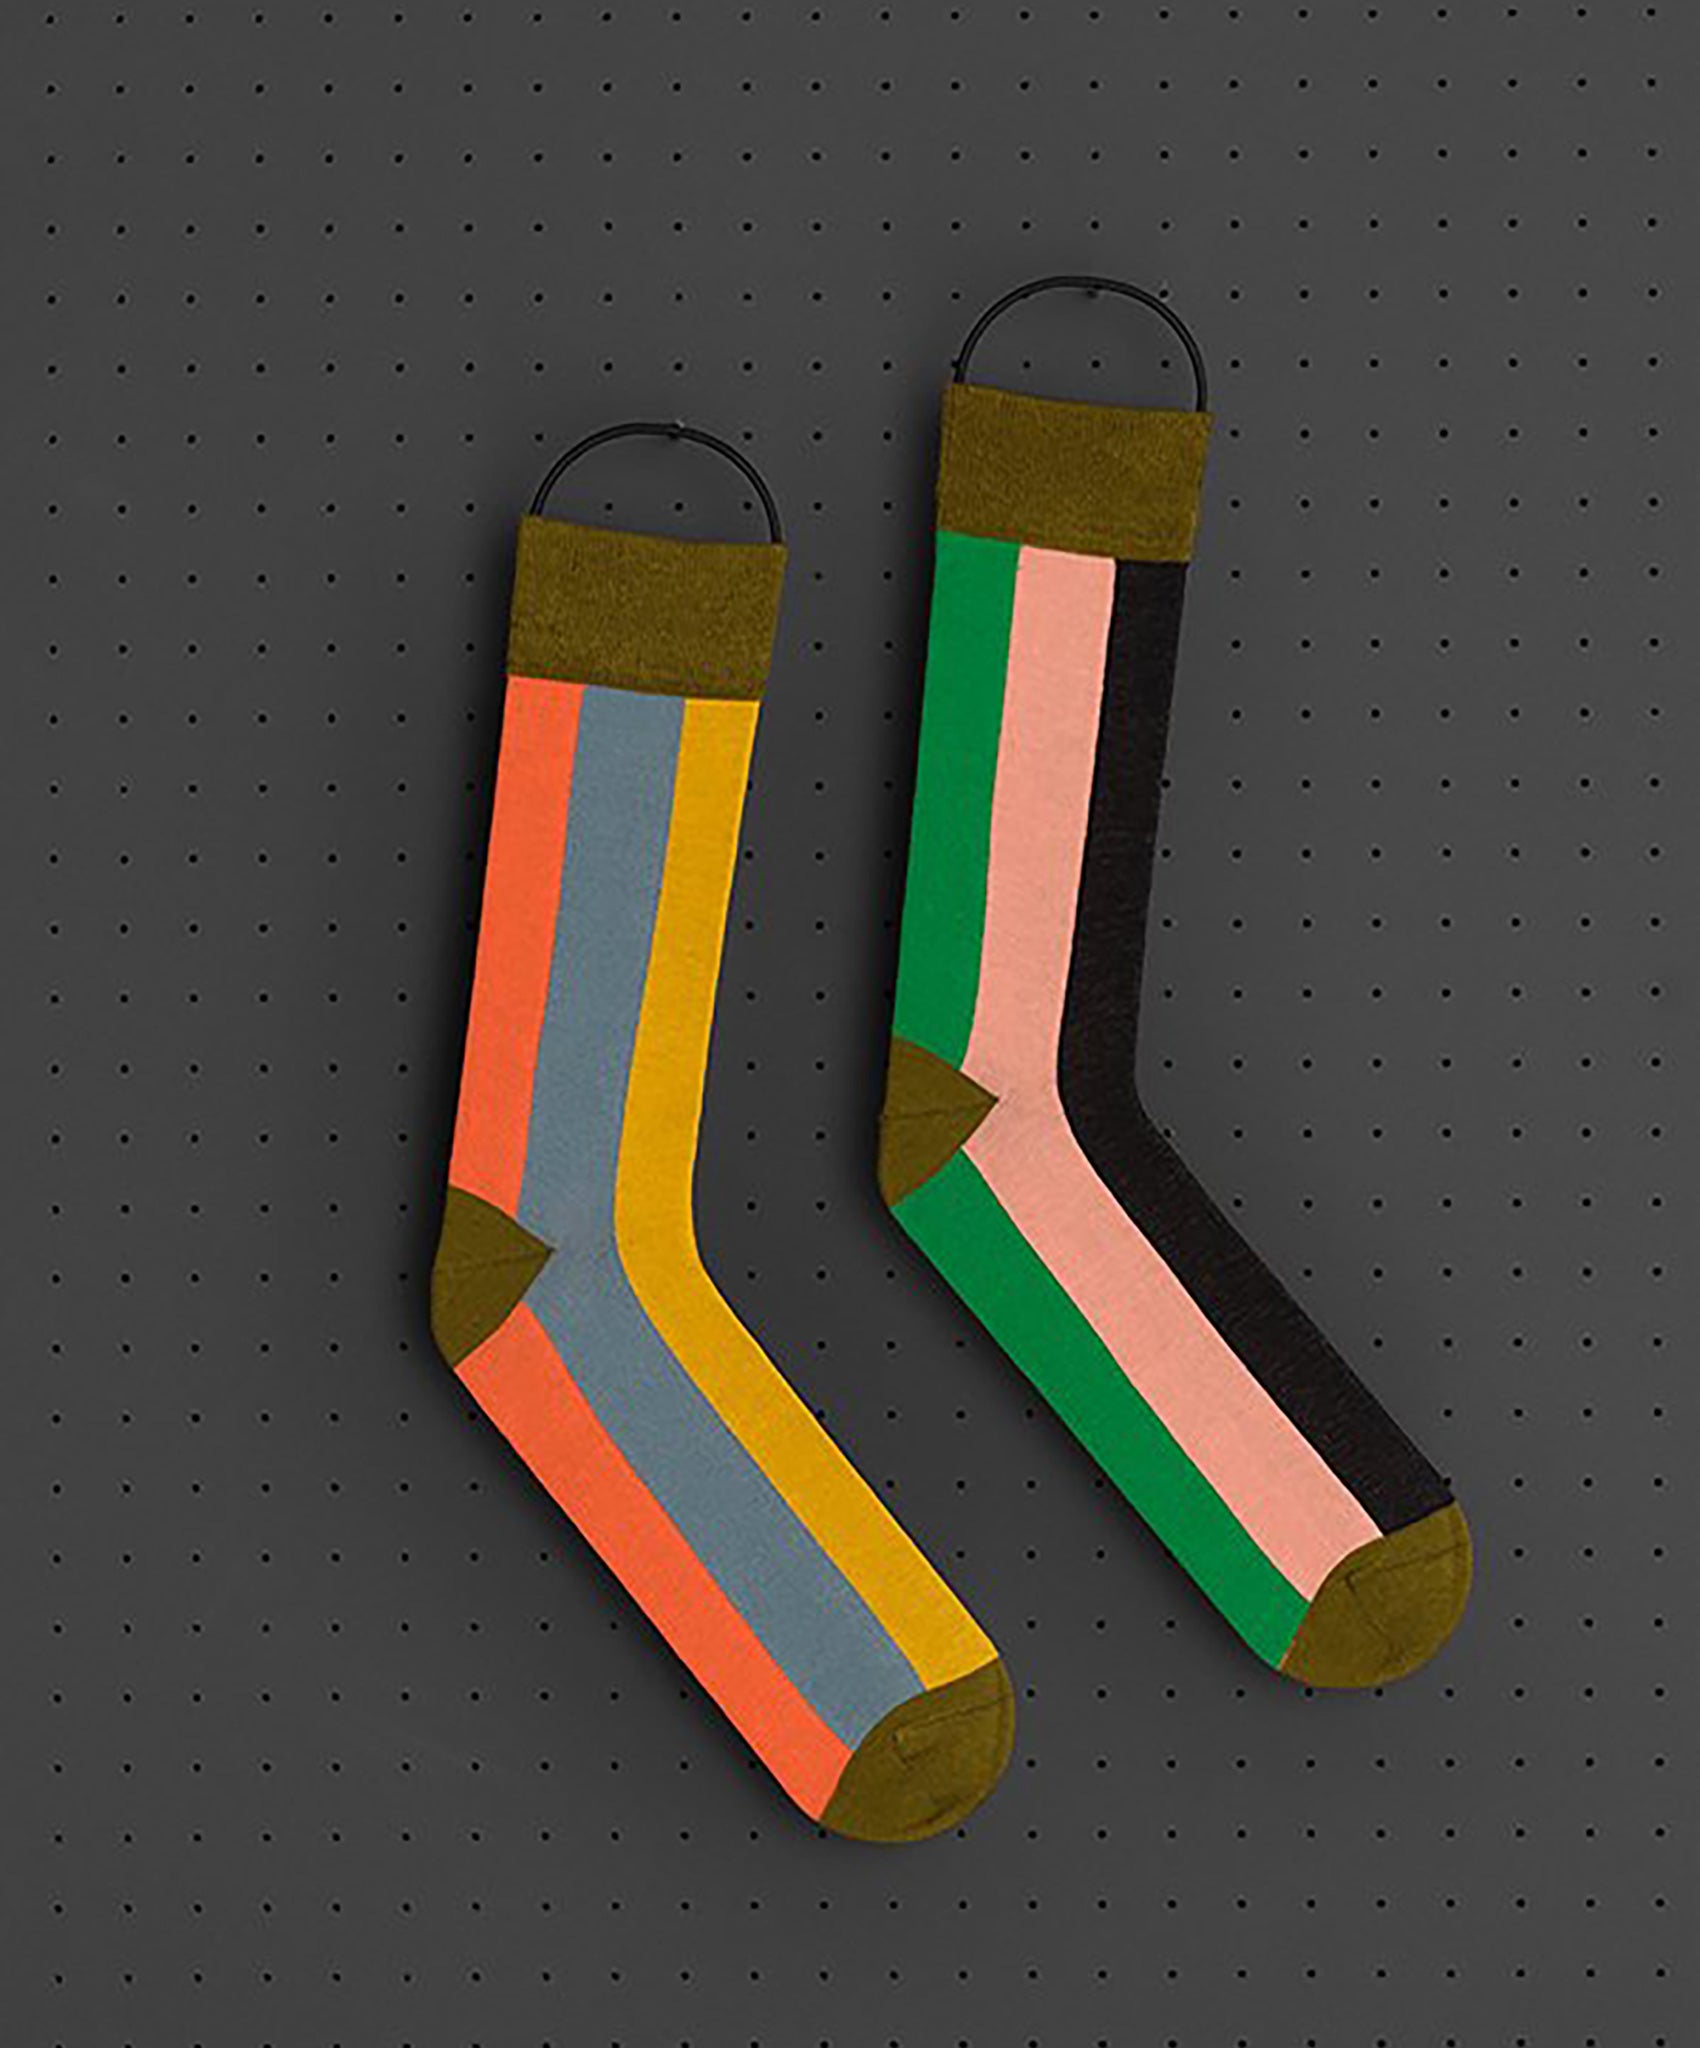 Jo Gordon-Vertical Stripe Socks // 6 Color